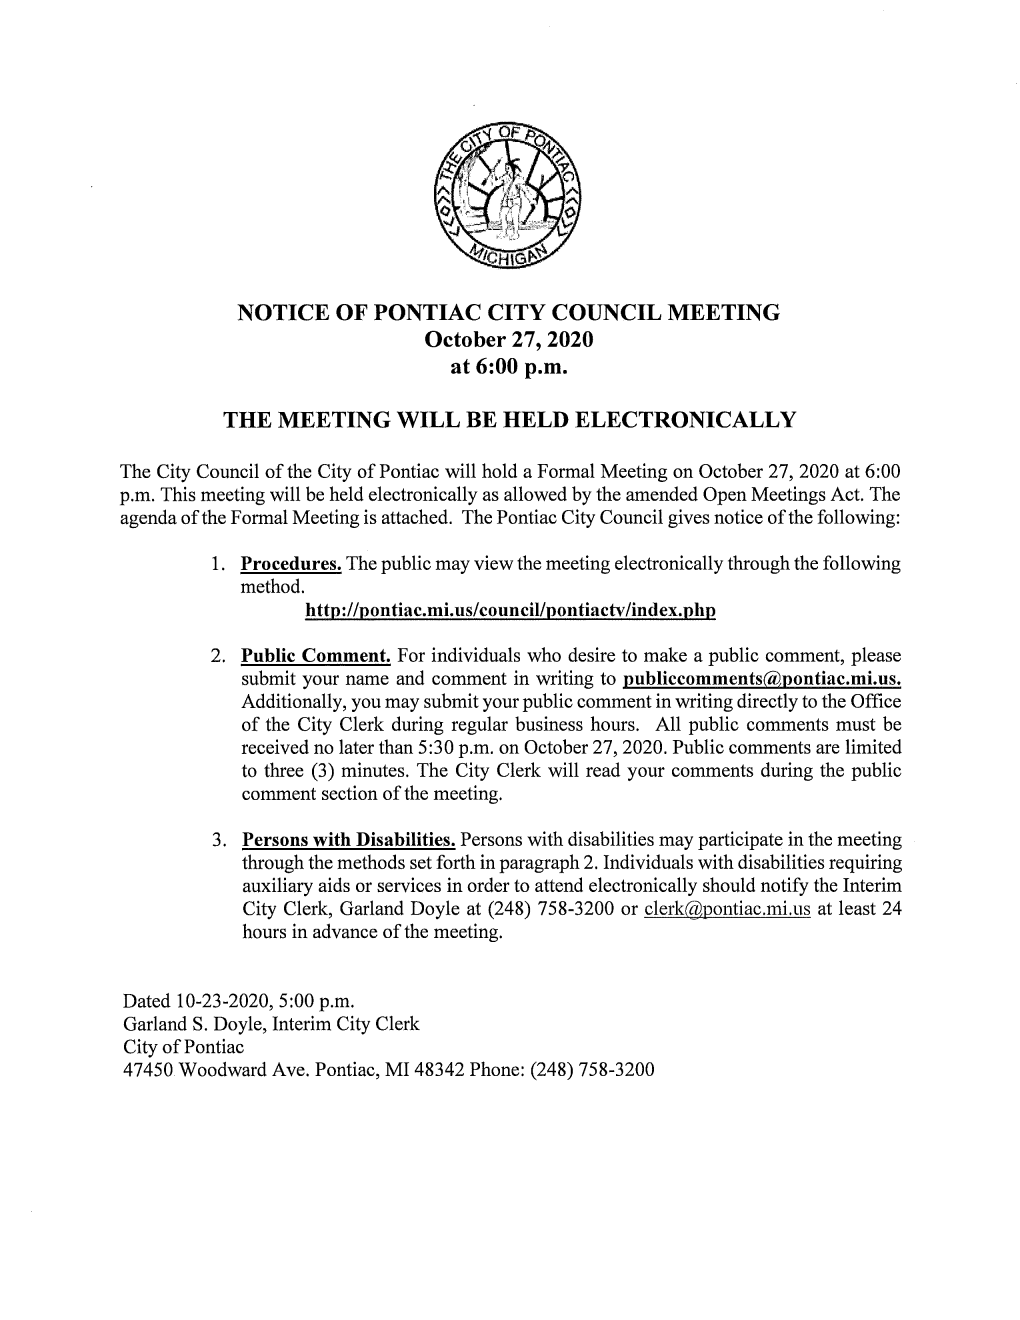 NOTICE of PONTIAC CITY COUNCIL MEETING October 27, 2020 at 6:00 P.M